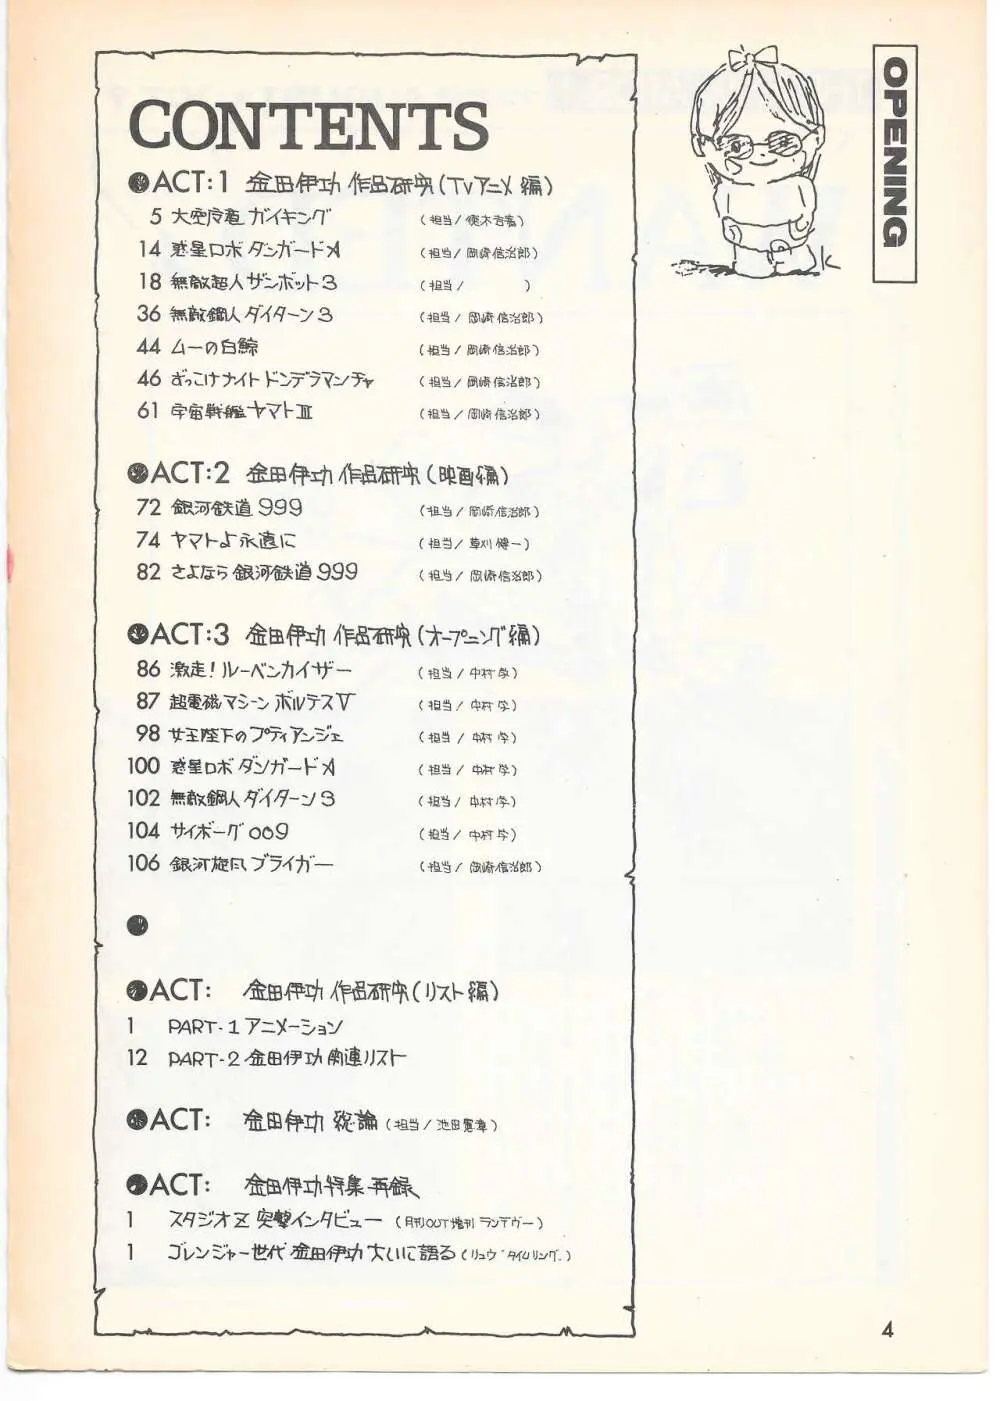 THE ANIMATOR 1 金田伊功特集号 3ページ